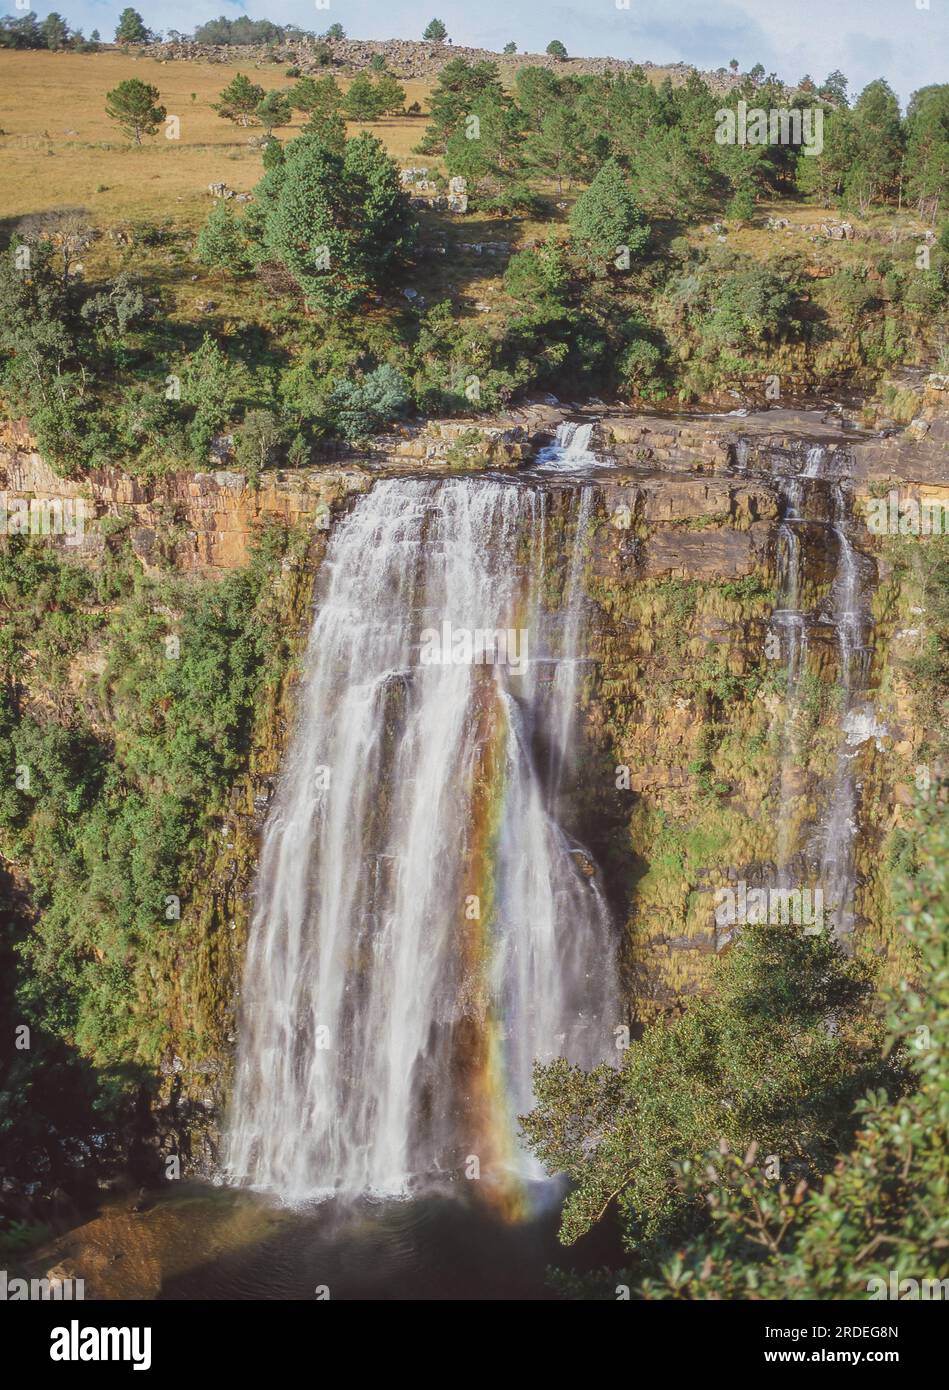 Die Lisbon Falls befinden sich im Lisbon Creek, einem Nebenfluss des Blyde River. Sie befinden sich in kurzer Entfernung nördlich von Graskop in Mpumalanga, Südafrika. Stockfoto